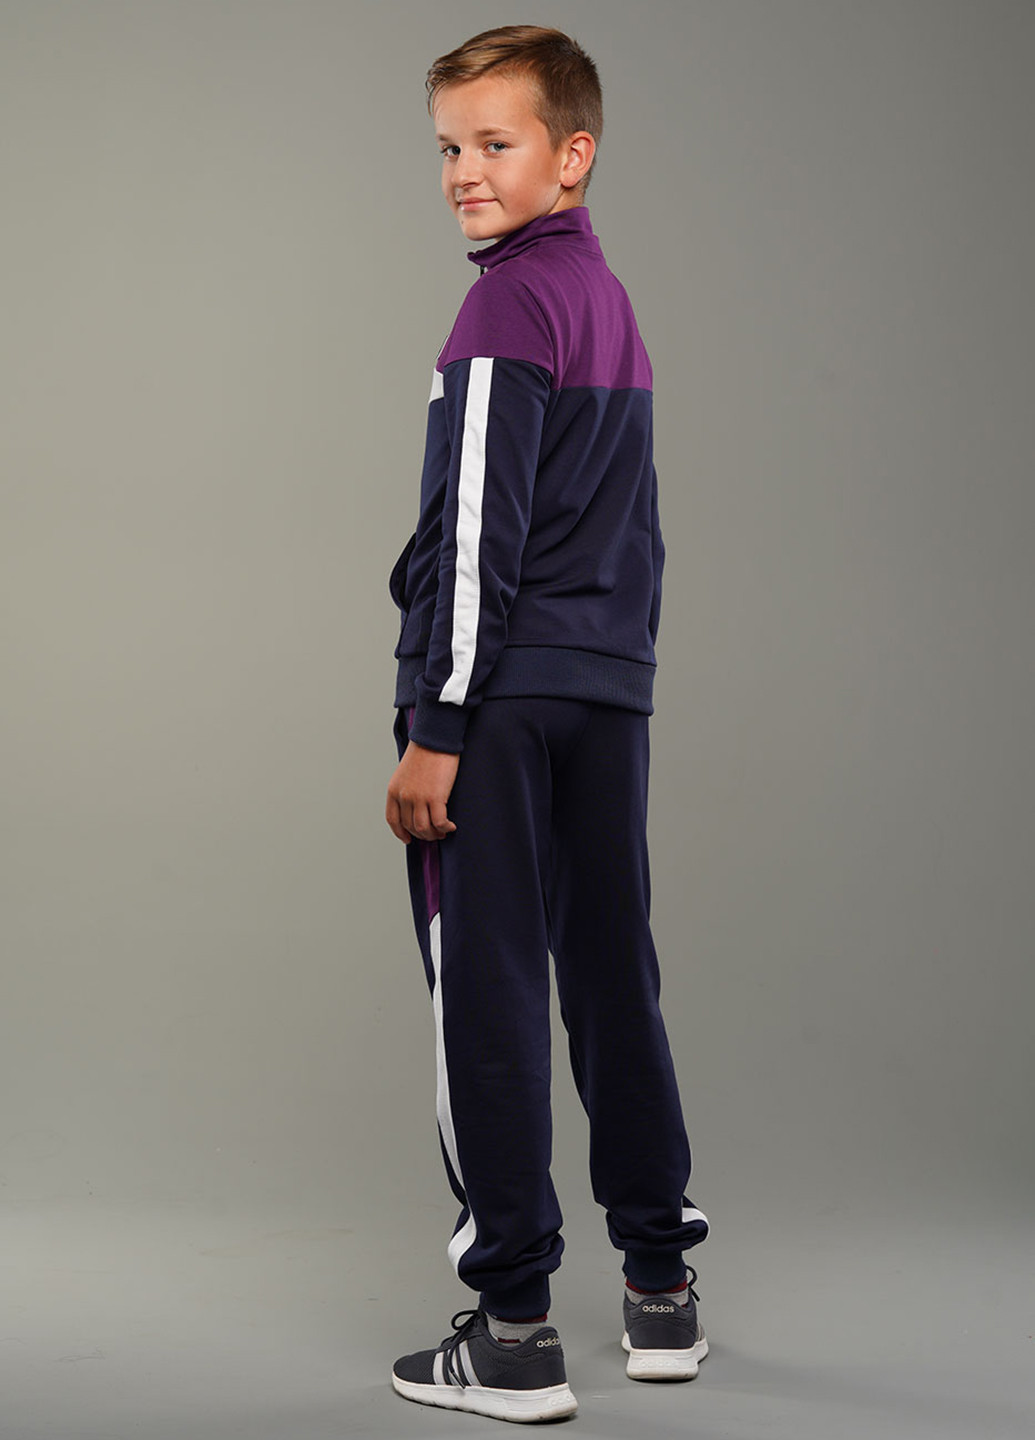 Фиолетовый демисезонный костюм (кофта, брюки) брючный, с длинным рукавом Tiaren